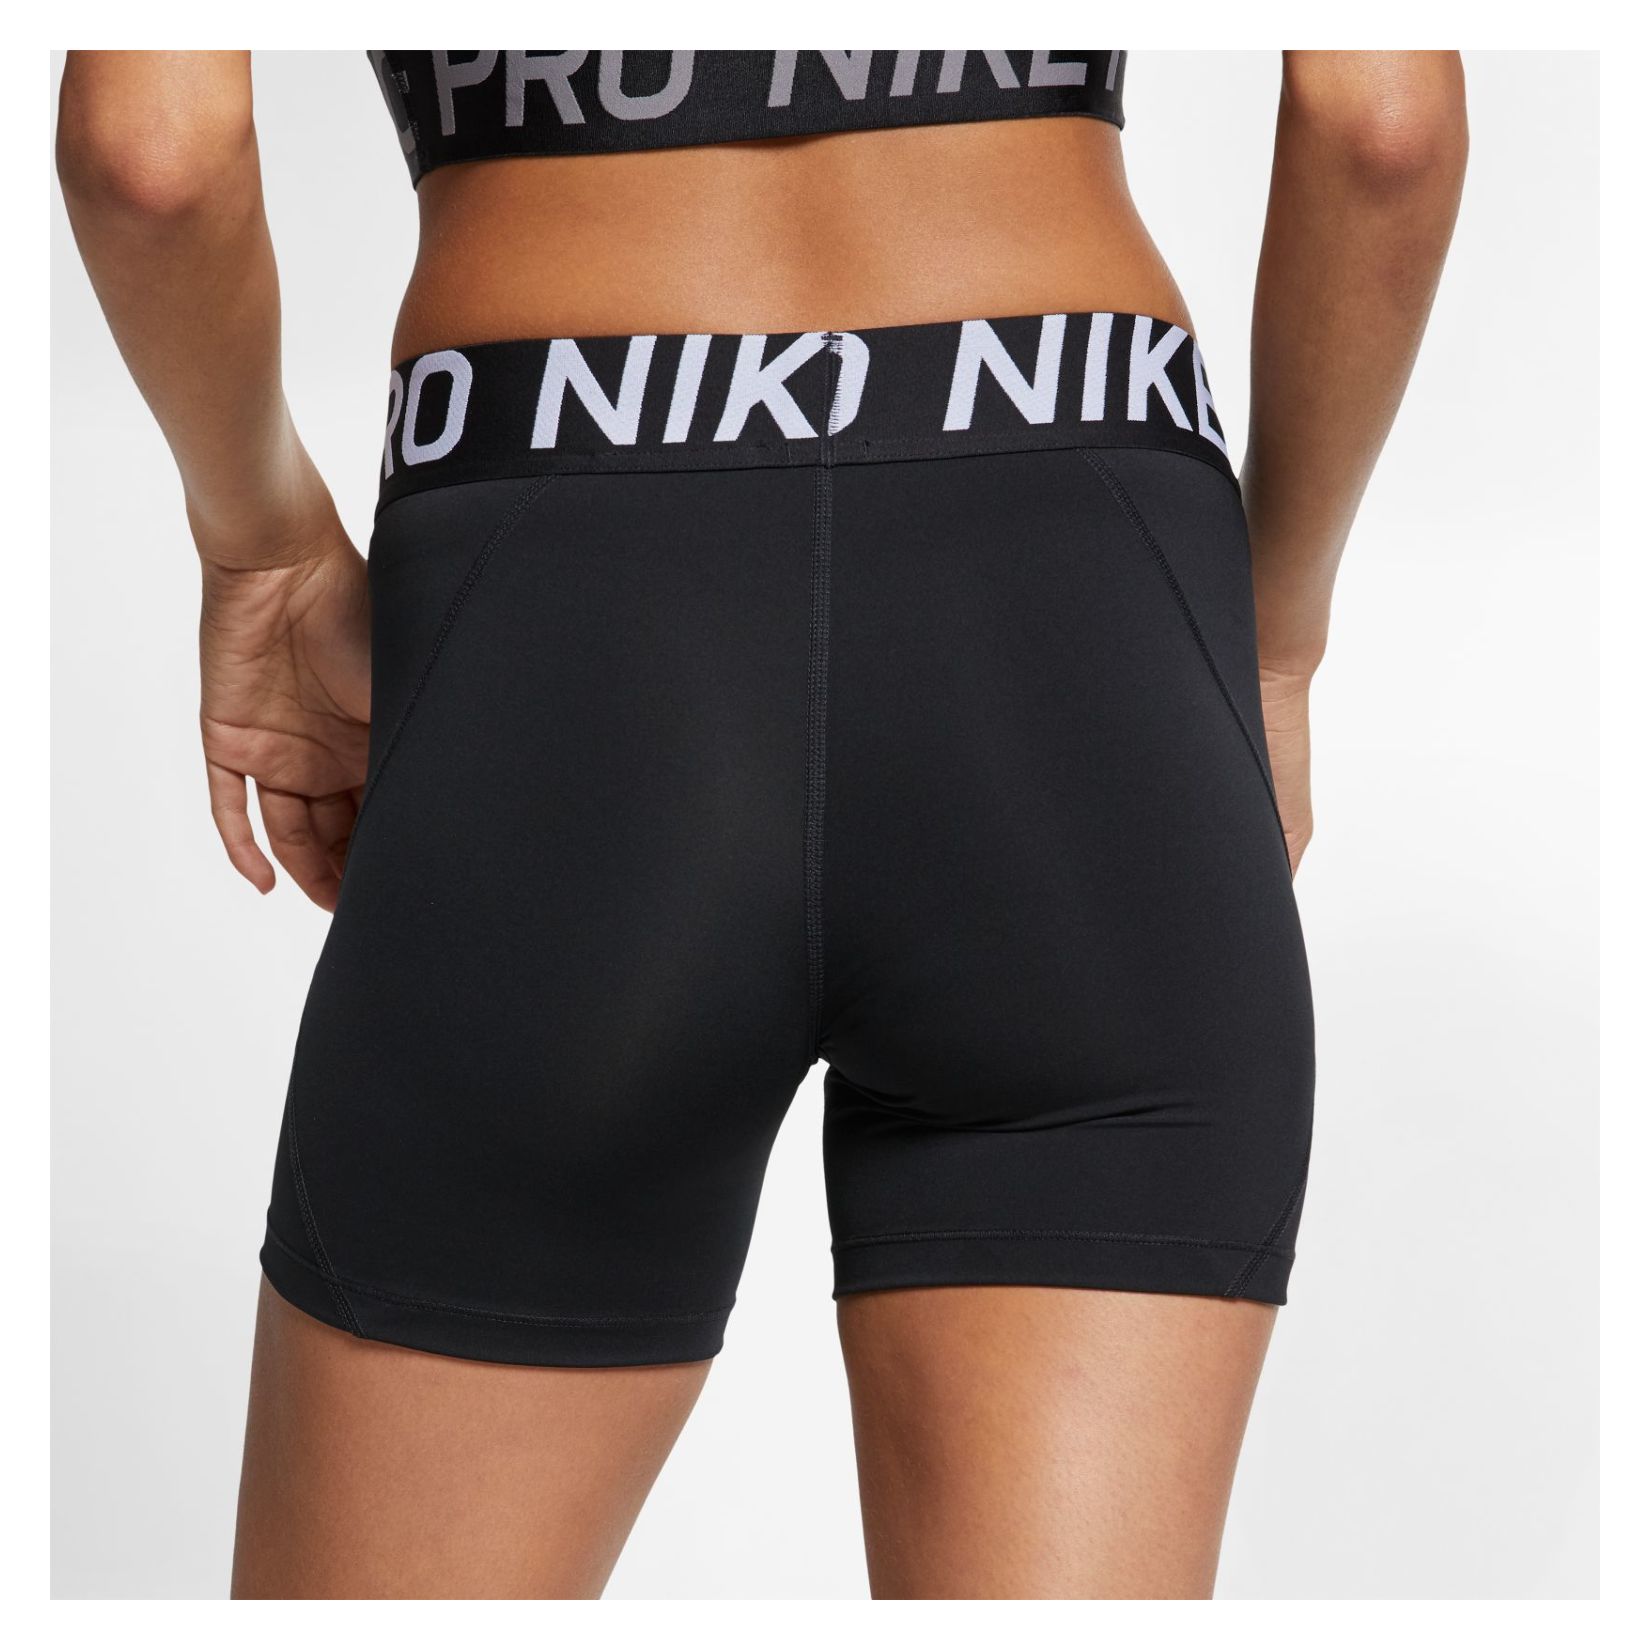 nike training shorts 5 inch